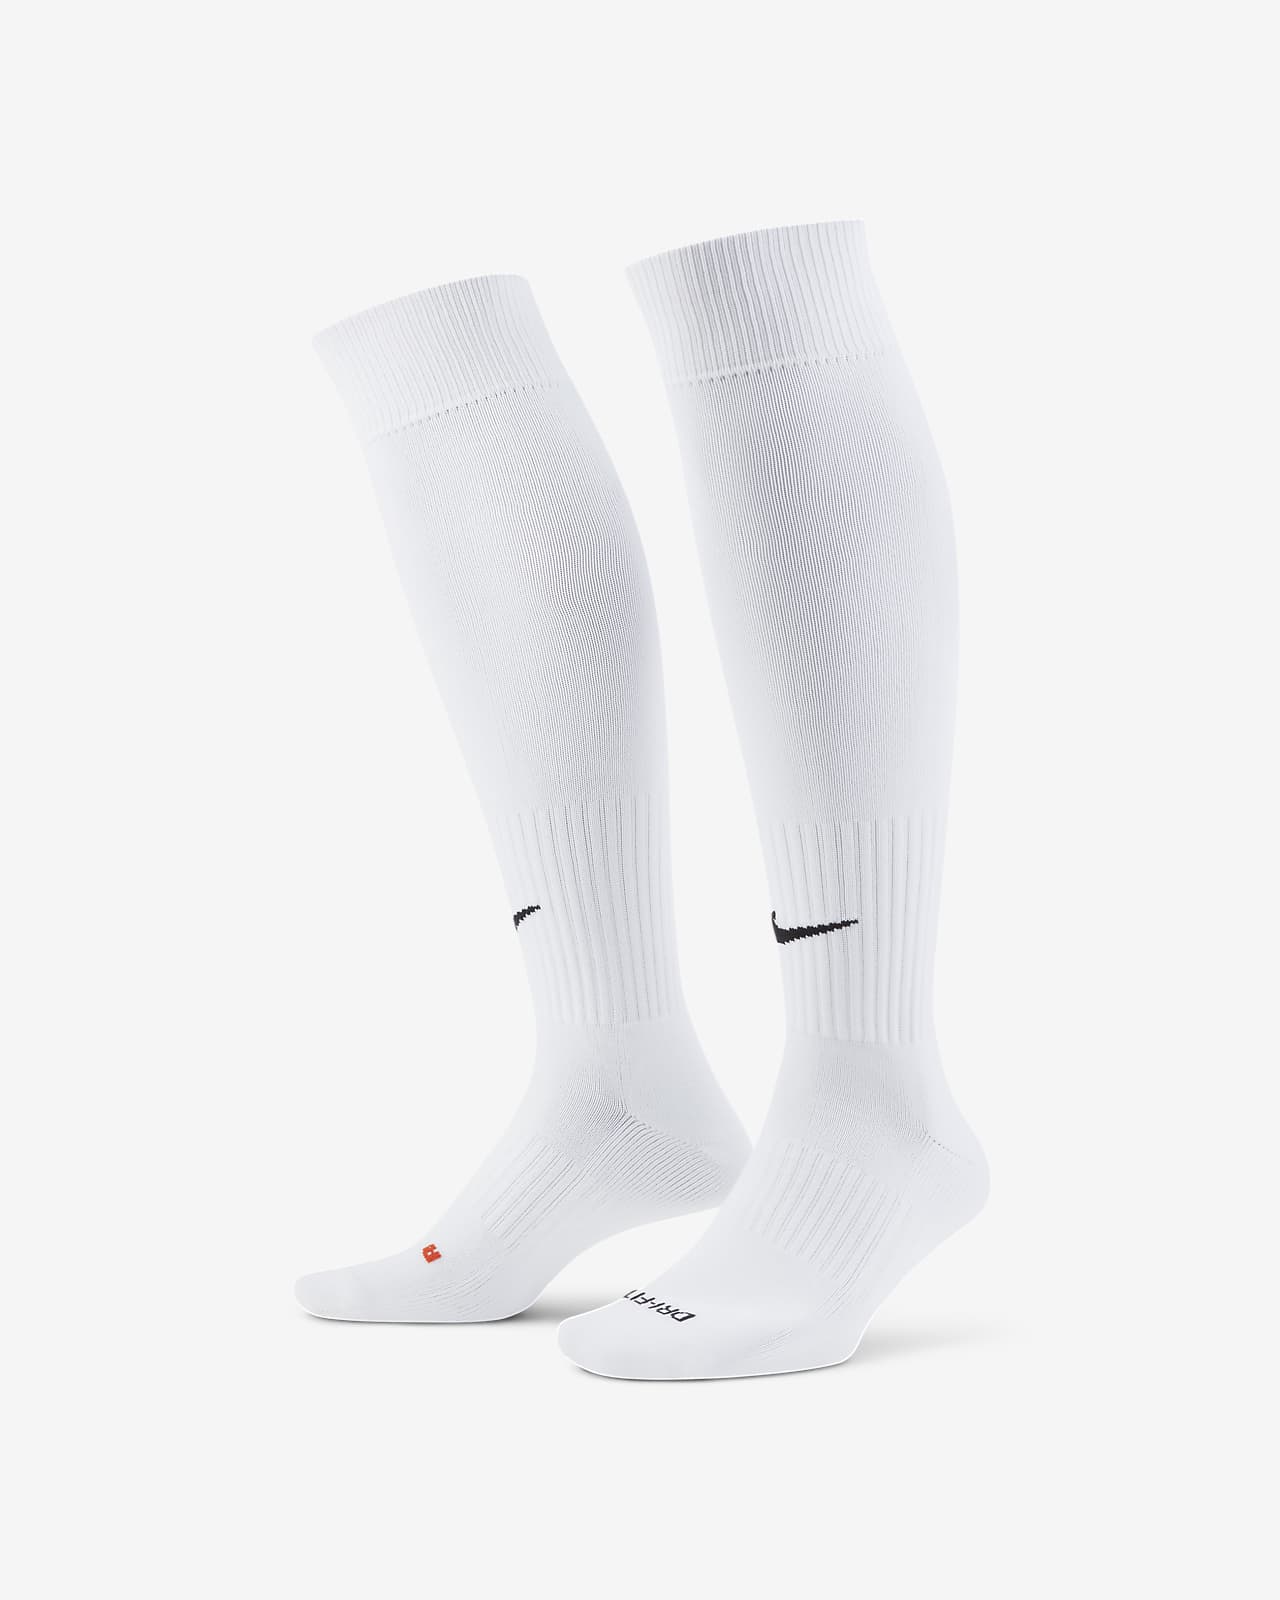 nike long soccer socks